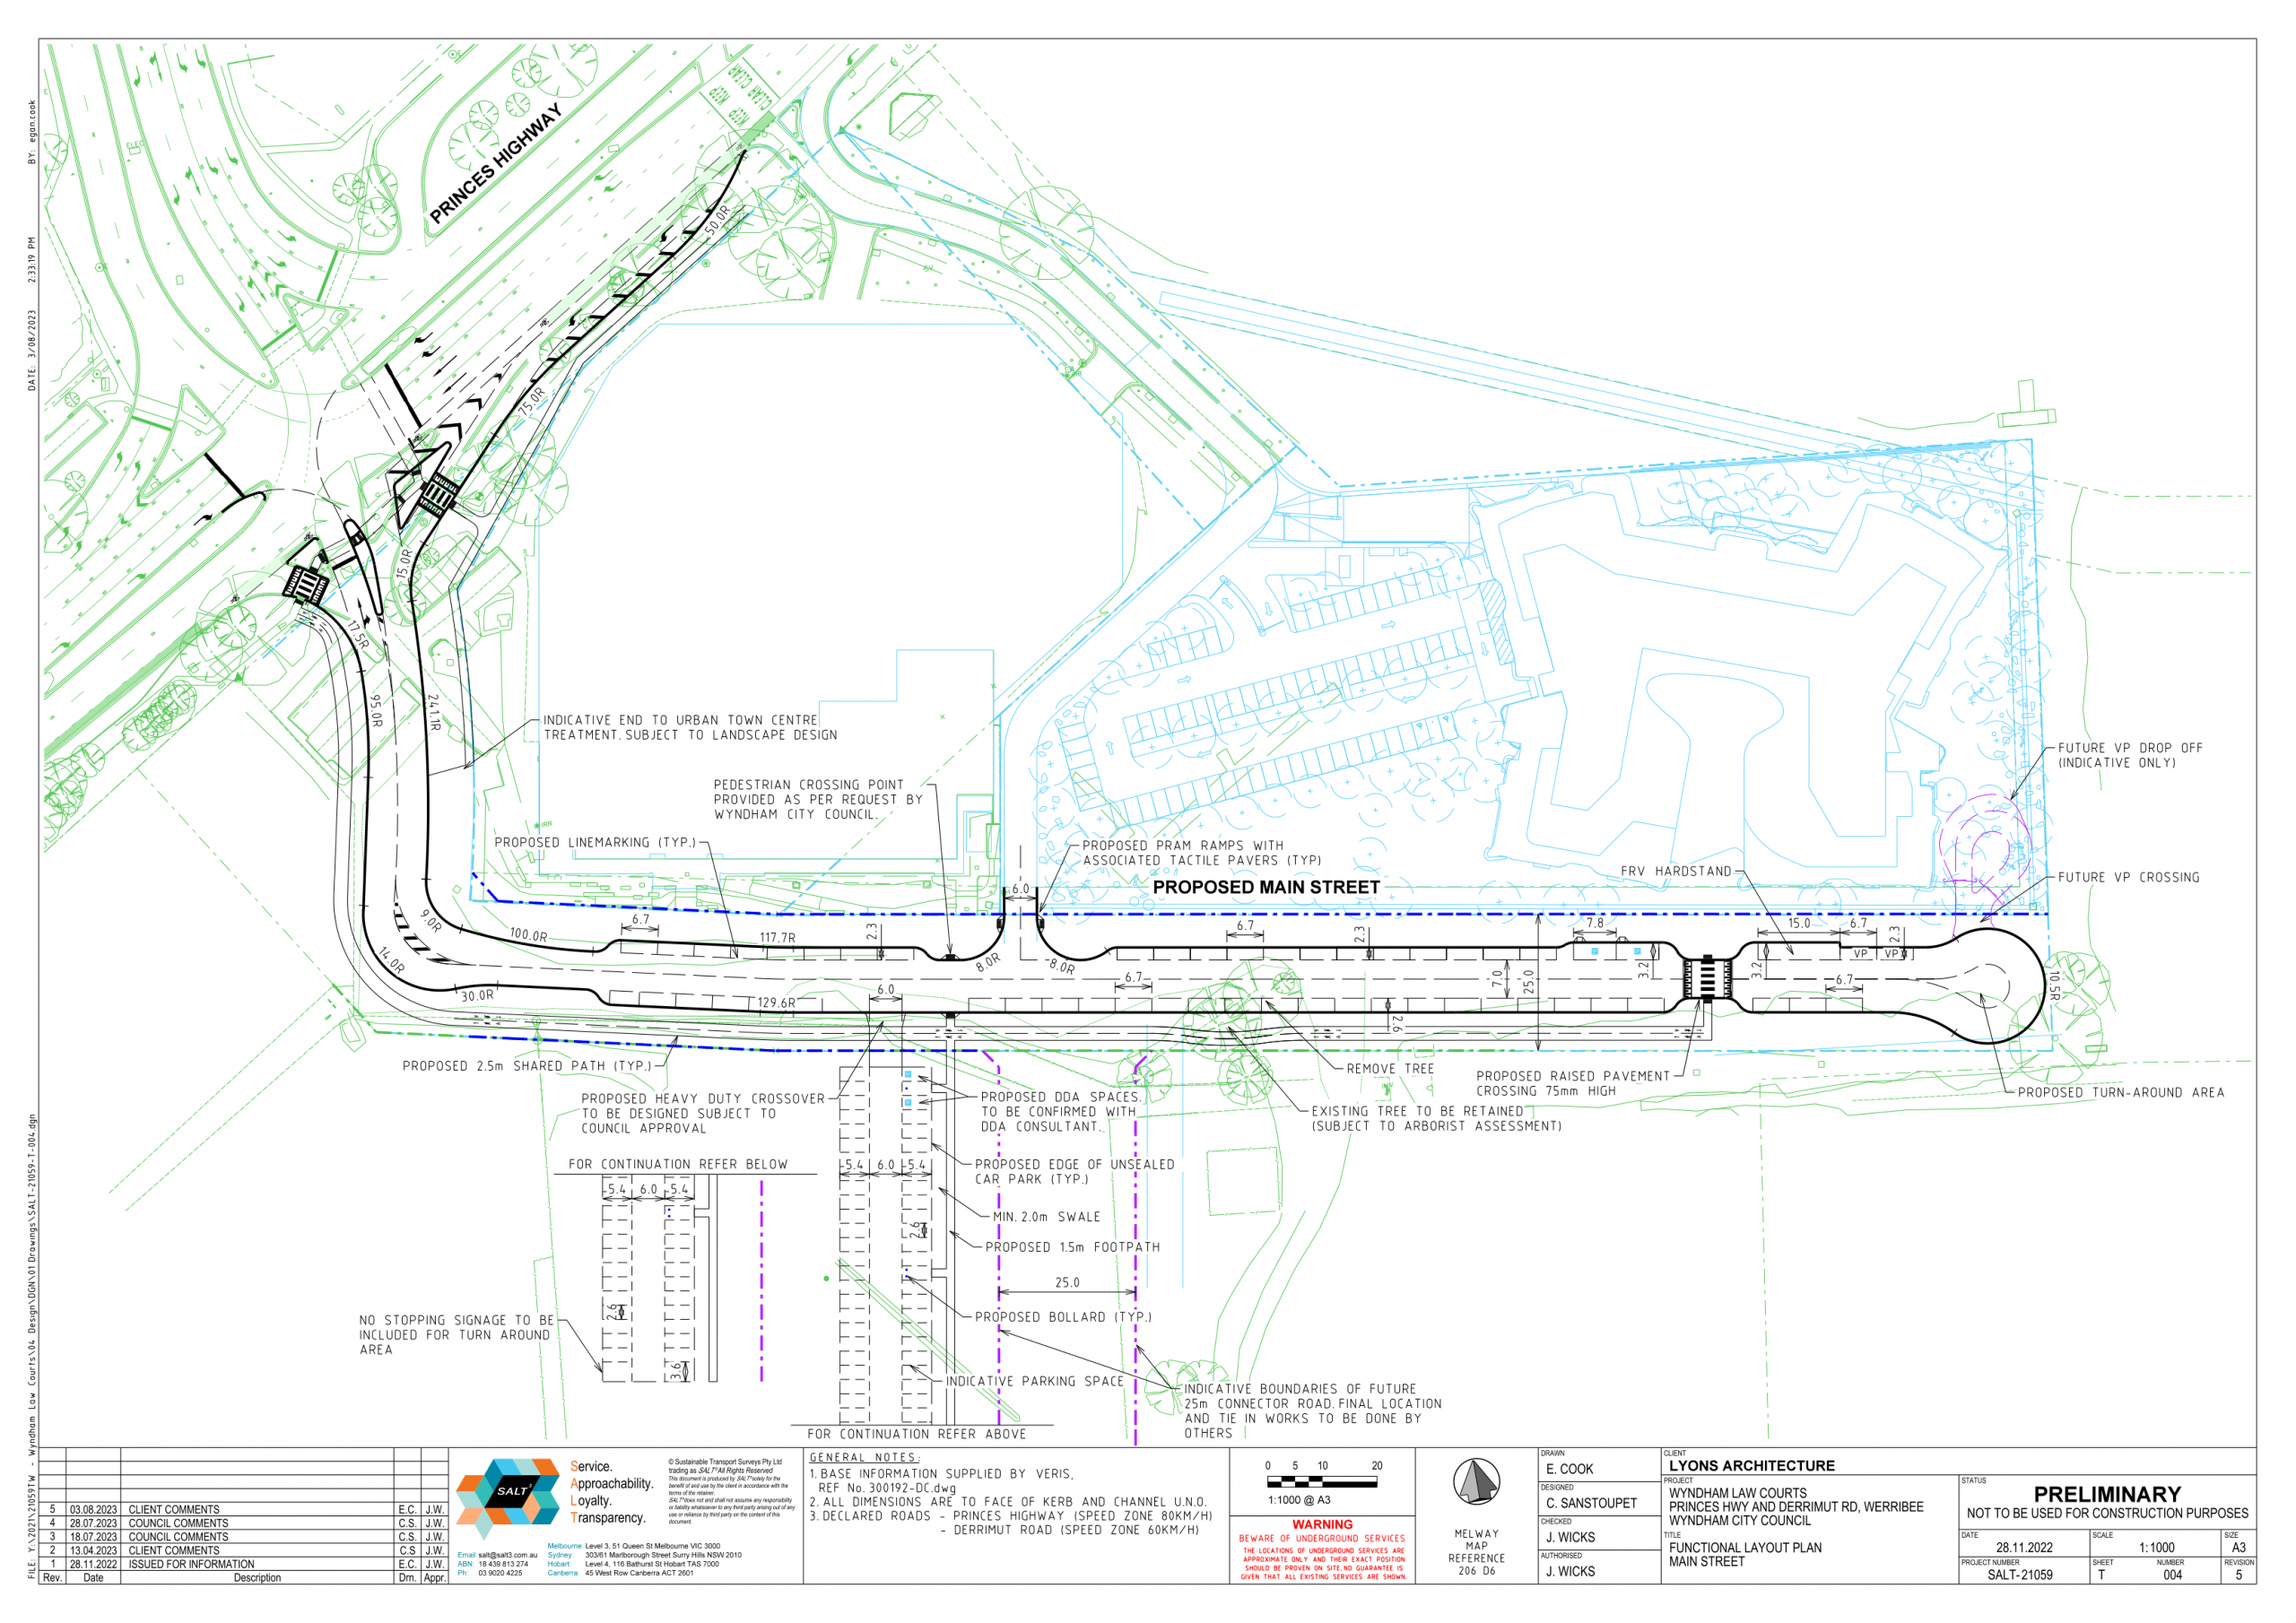 Main Street Functional Layout Plan, Wyndham 1